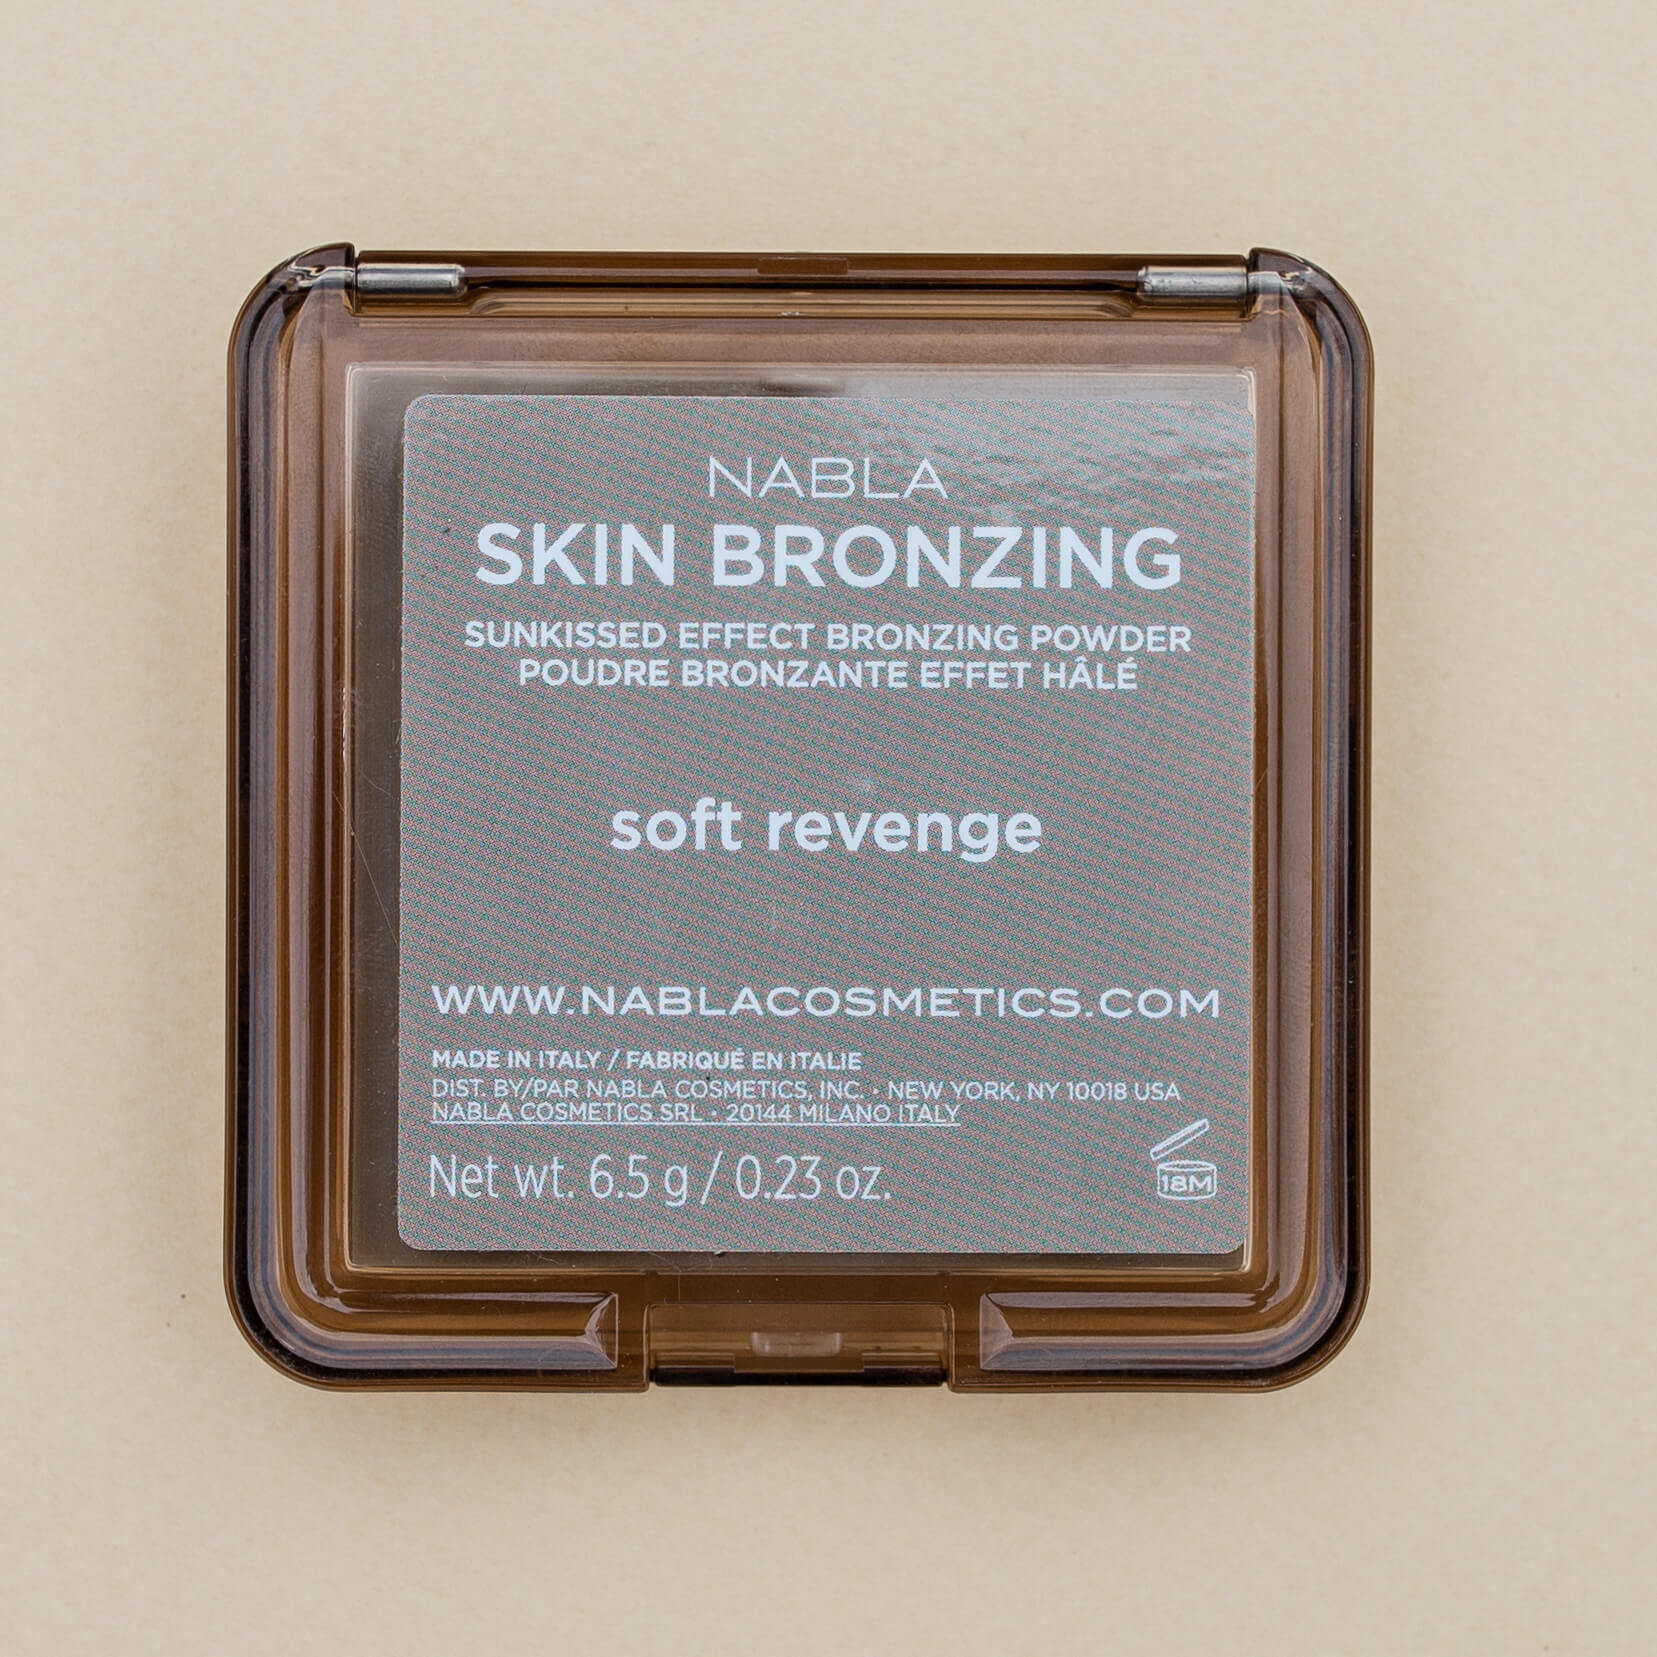 Nabla Skin Bronzing Powder Review | Twinspiration